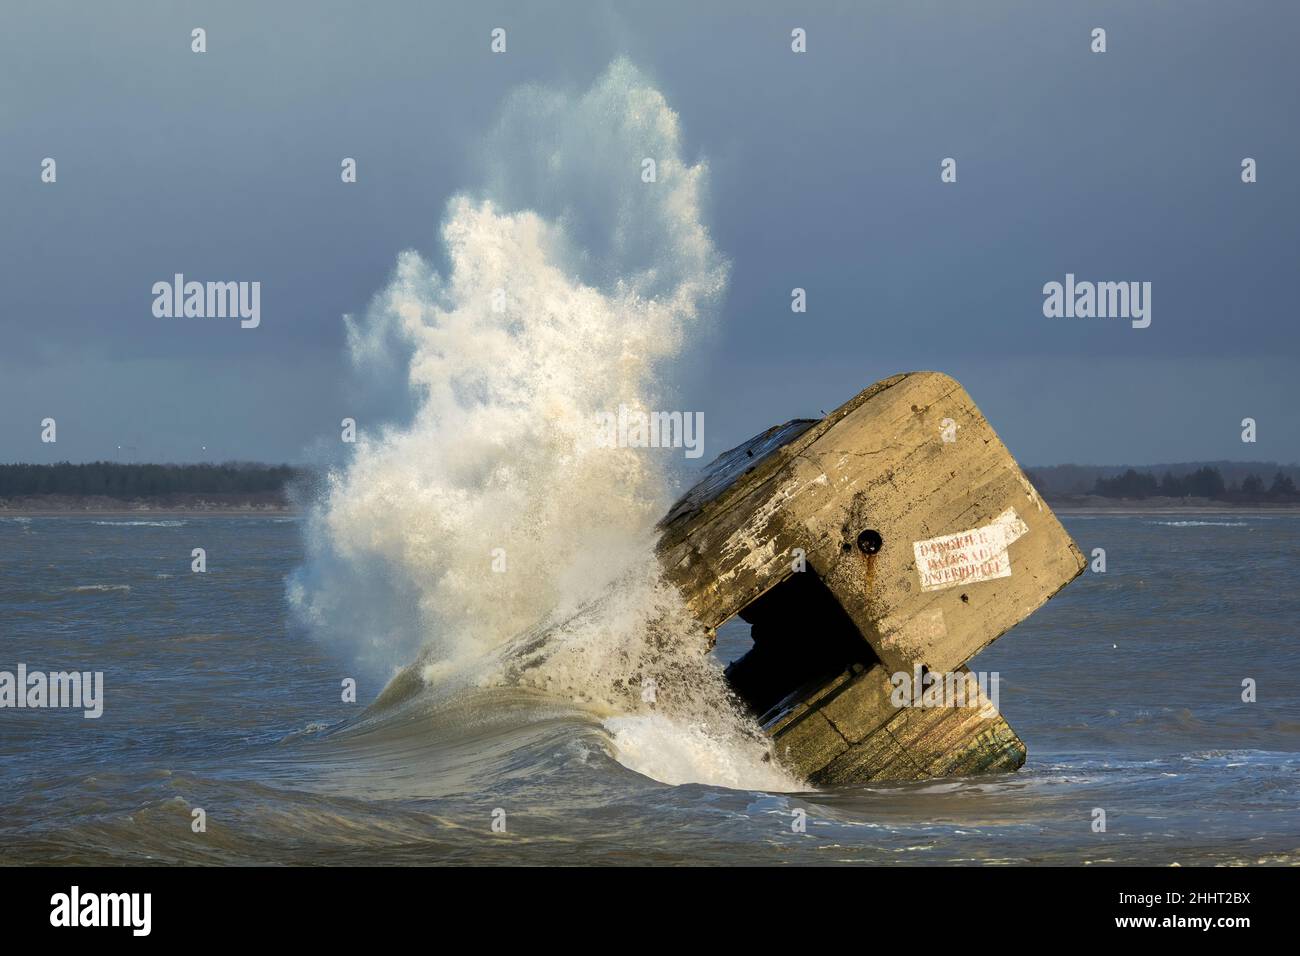 Le blockhaus du Hourdel dans la tempête, vagues géantes sur le monstre de béton. Stock Photo